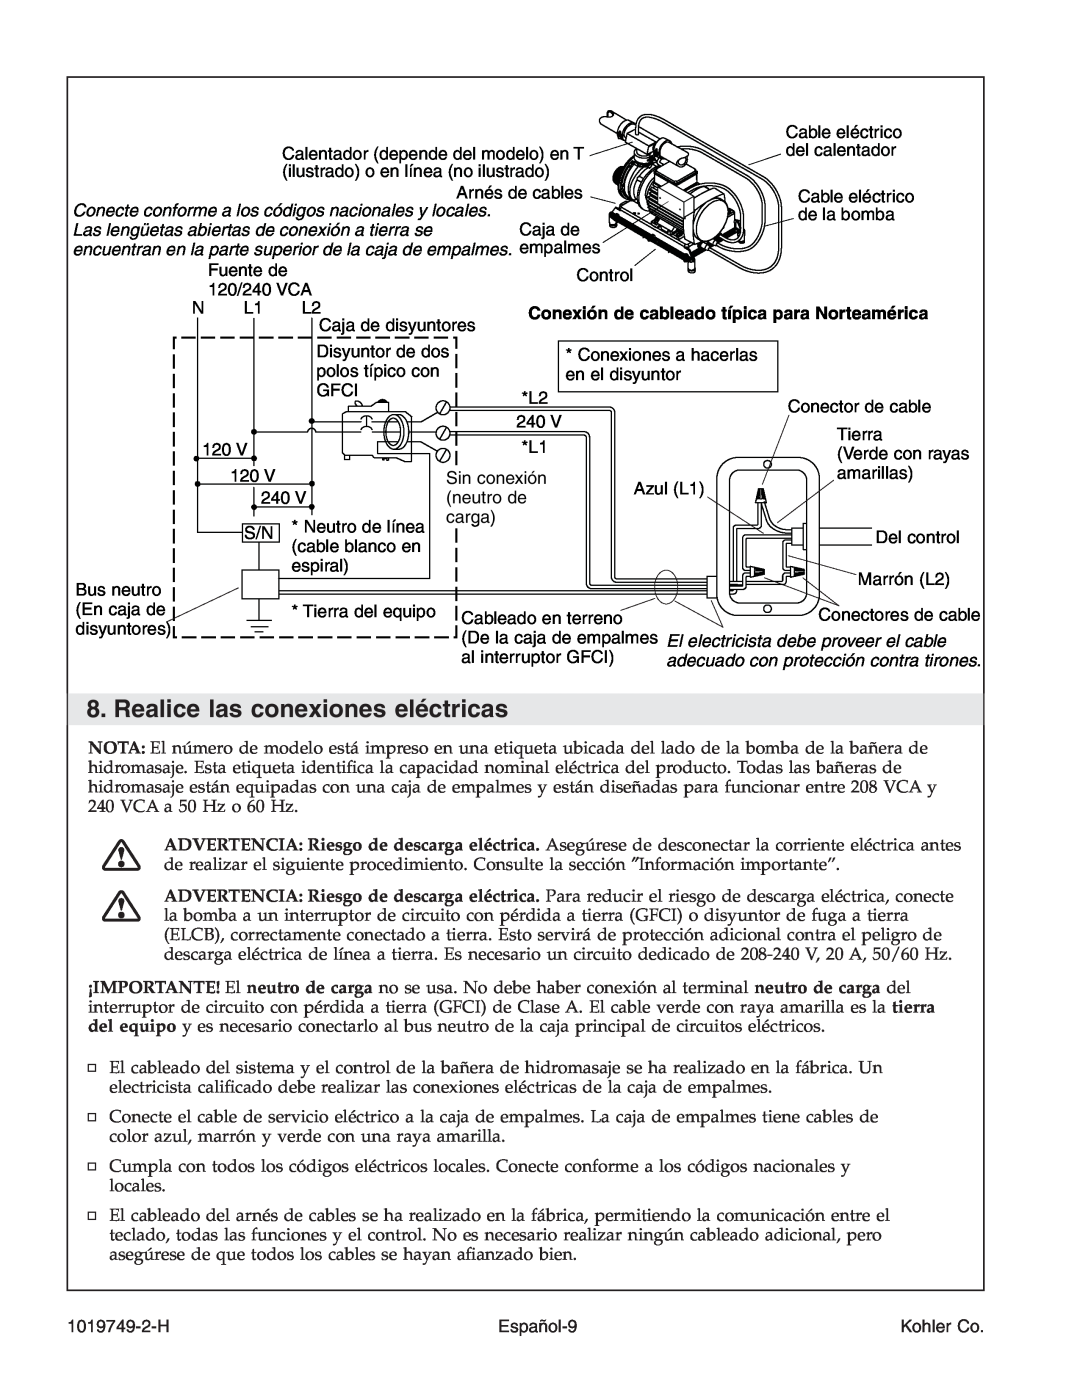 Kohler K-1433, K-1375, K-1461, K-1460 manual Realice las conexiones eléctricas, Conexión de cableado típica para Norteamérica 